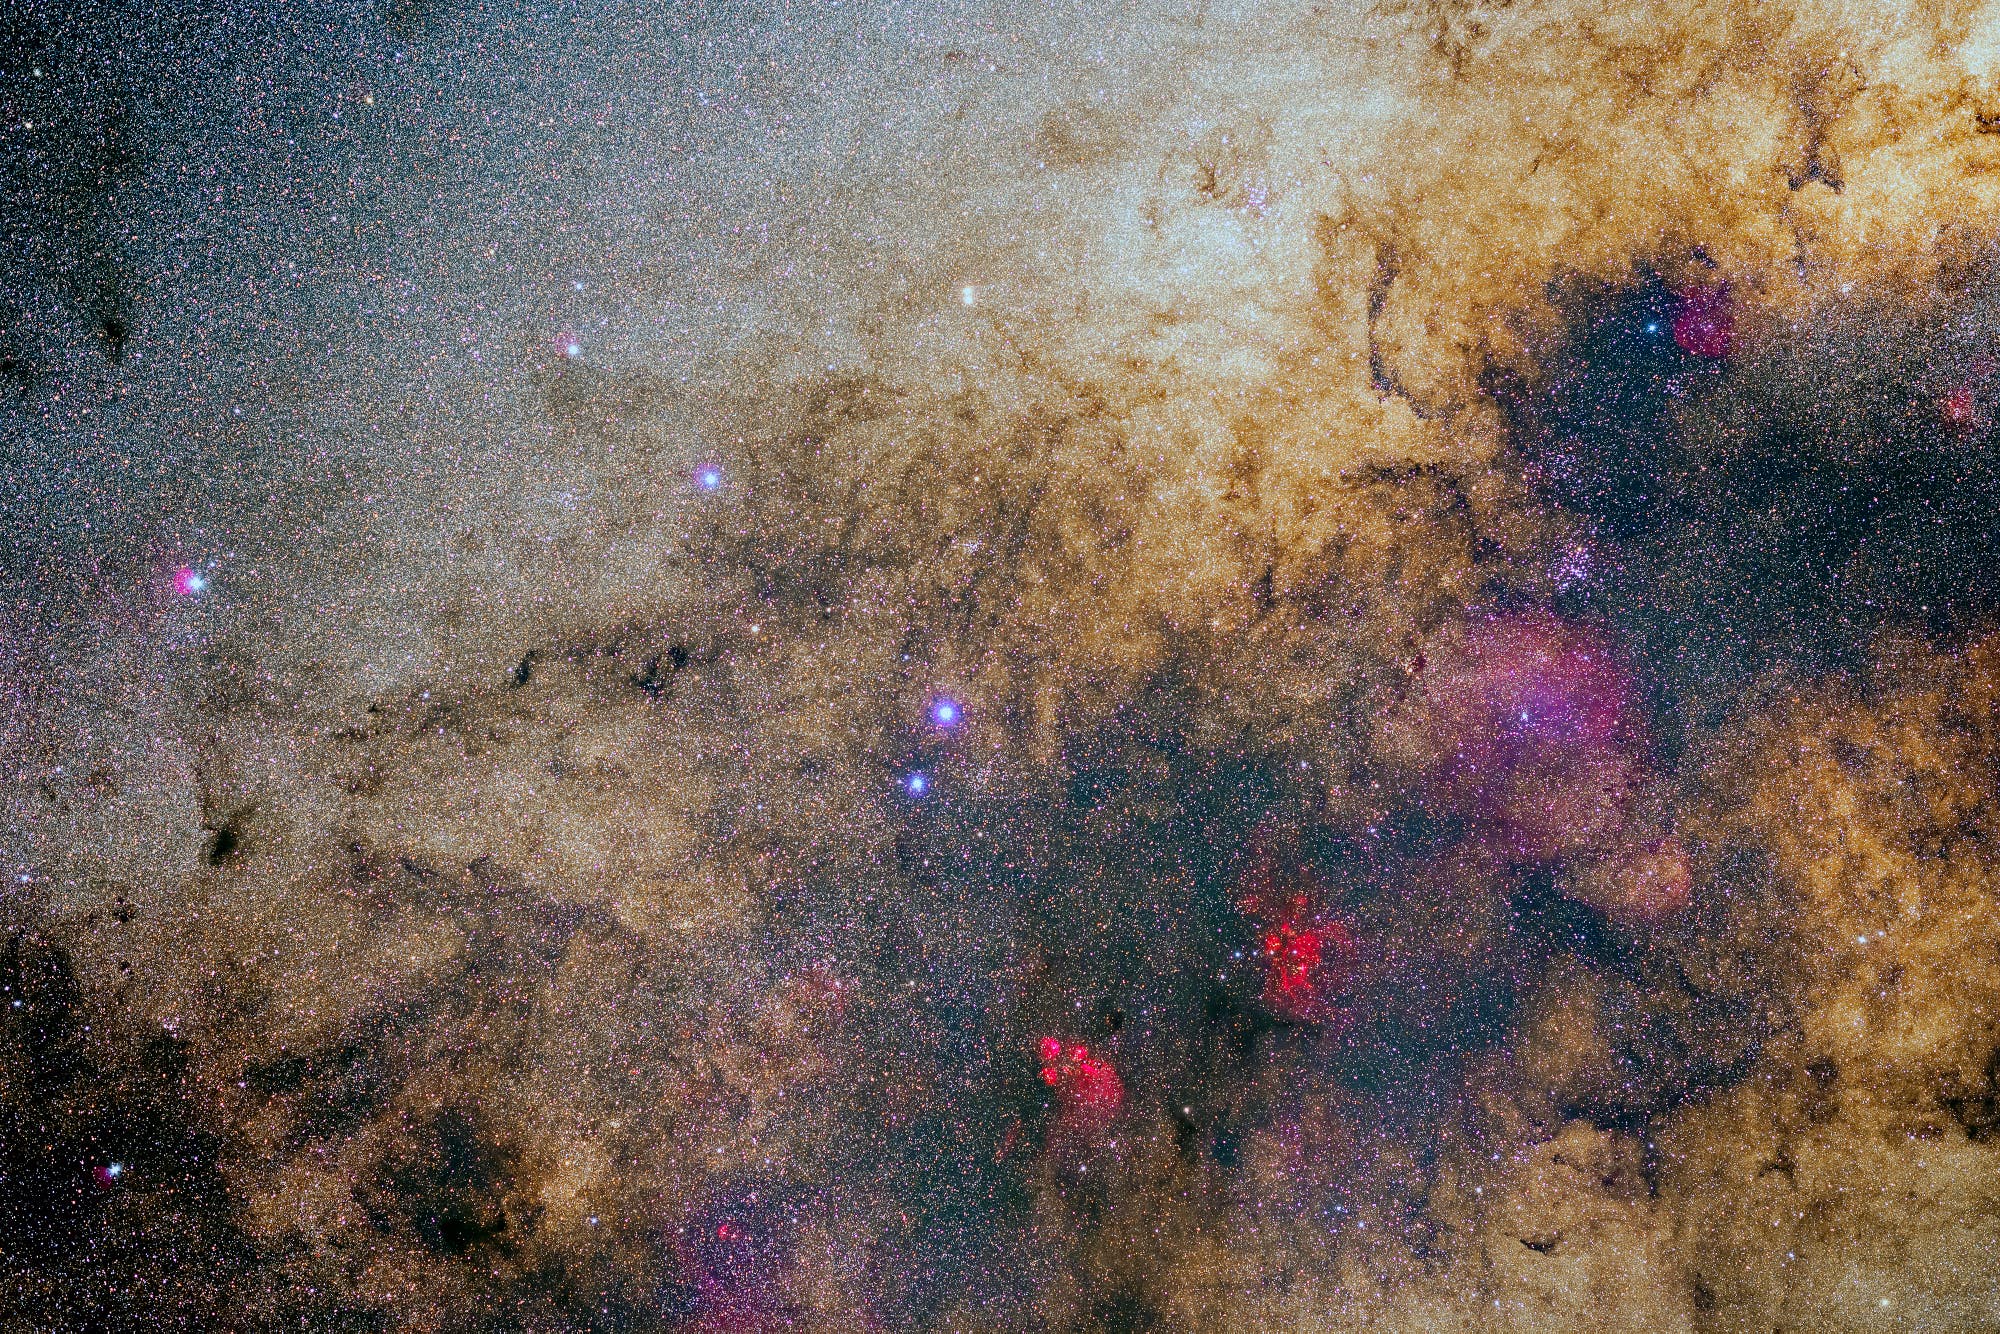 Katzenpfoten- und Hummernebel inmitten reicher Sternfelder der Milchstraße